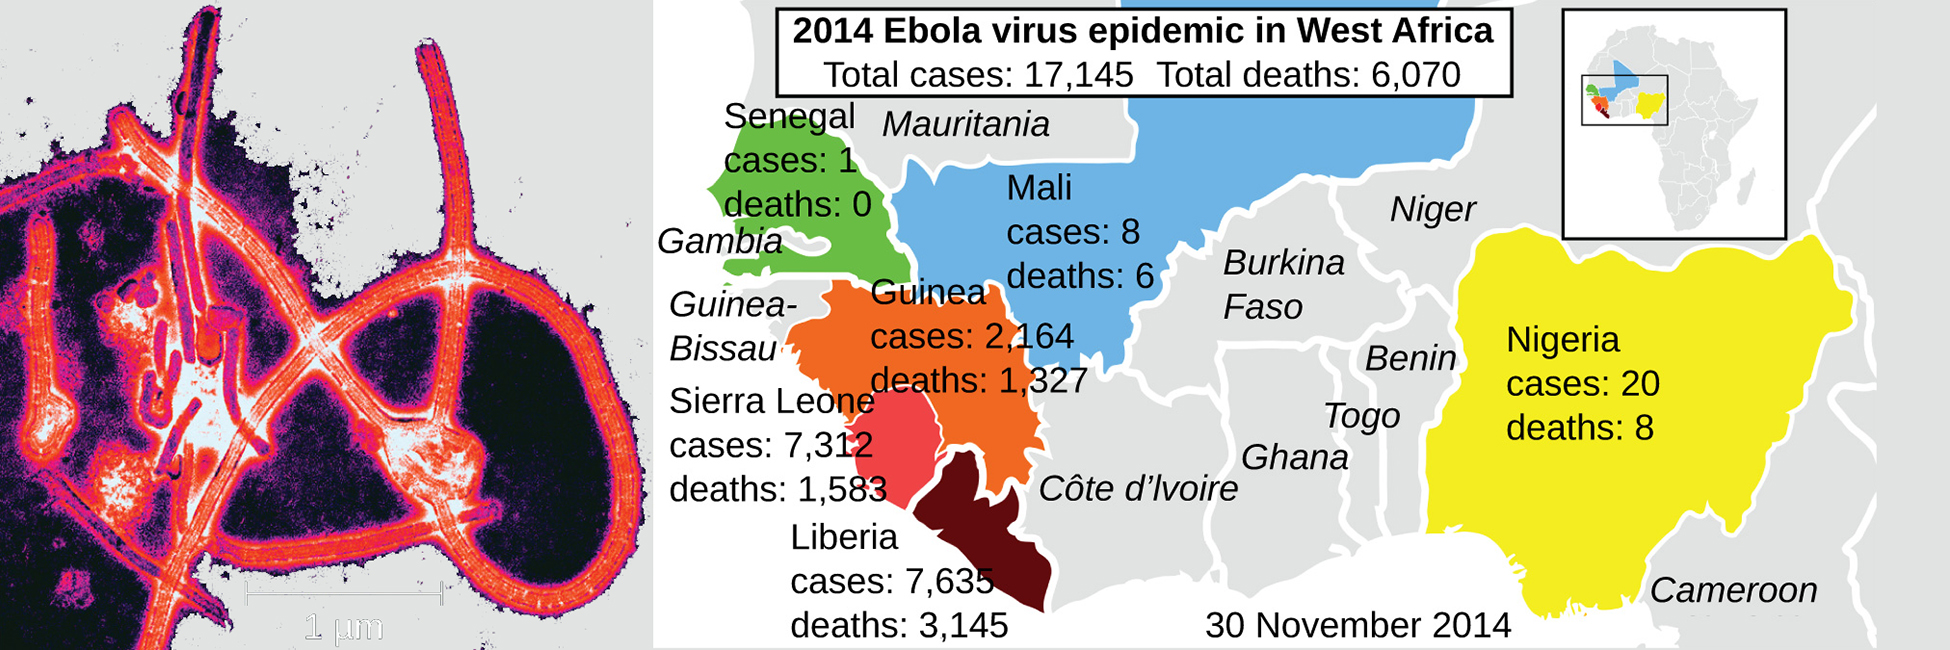 La micrografía electrónica muestra virus lineales envueltos en una estructura en forma de delta. El mapa muestra las epidemias de ébola 2014 en África Occidental. Se registraron 17 124 casos totales y 6 mil 070 muertes totales. Senegal tuvo 1 caso y no hubo muertes. Mali tuvo 8 casos y 6 muertes. Guinea tuvo 2,164 casos y 1,326 muertes, Sierra Leona tuvo 7,312 casos y 1,583 muertes, Liberia tuvo 7,635 casos y 3,145 muertes. Nigeria tuvo 20 casos y 8 muertes.